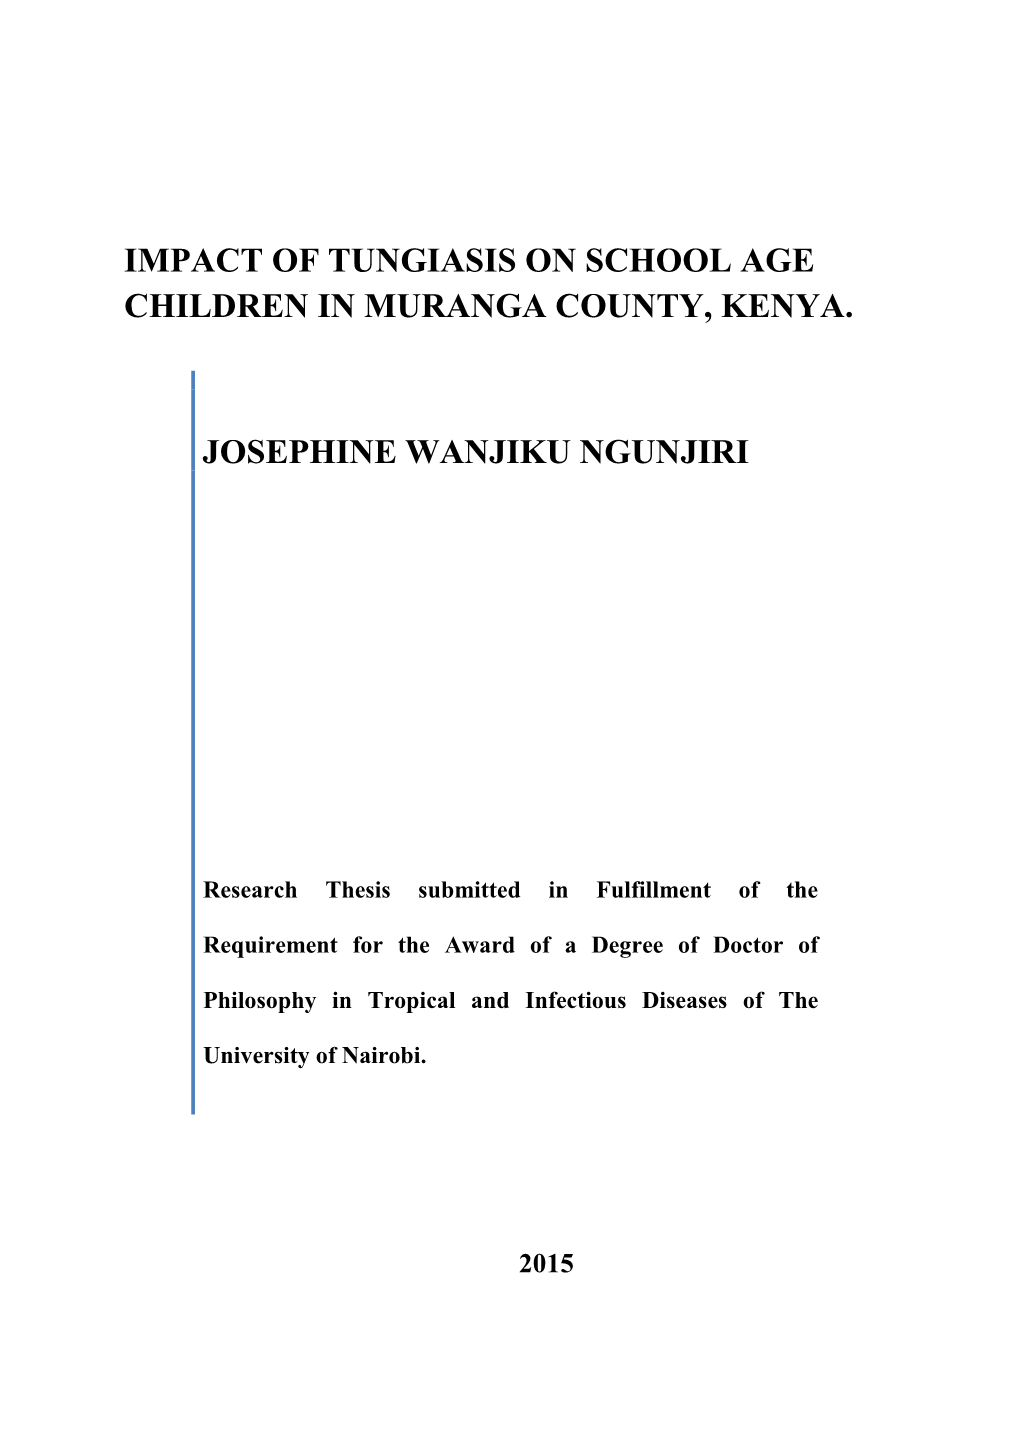 Impact of Tungiasis on School Age Children in Muranga County, Kenya